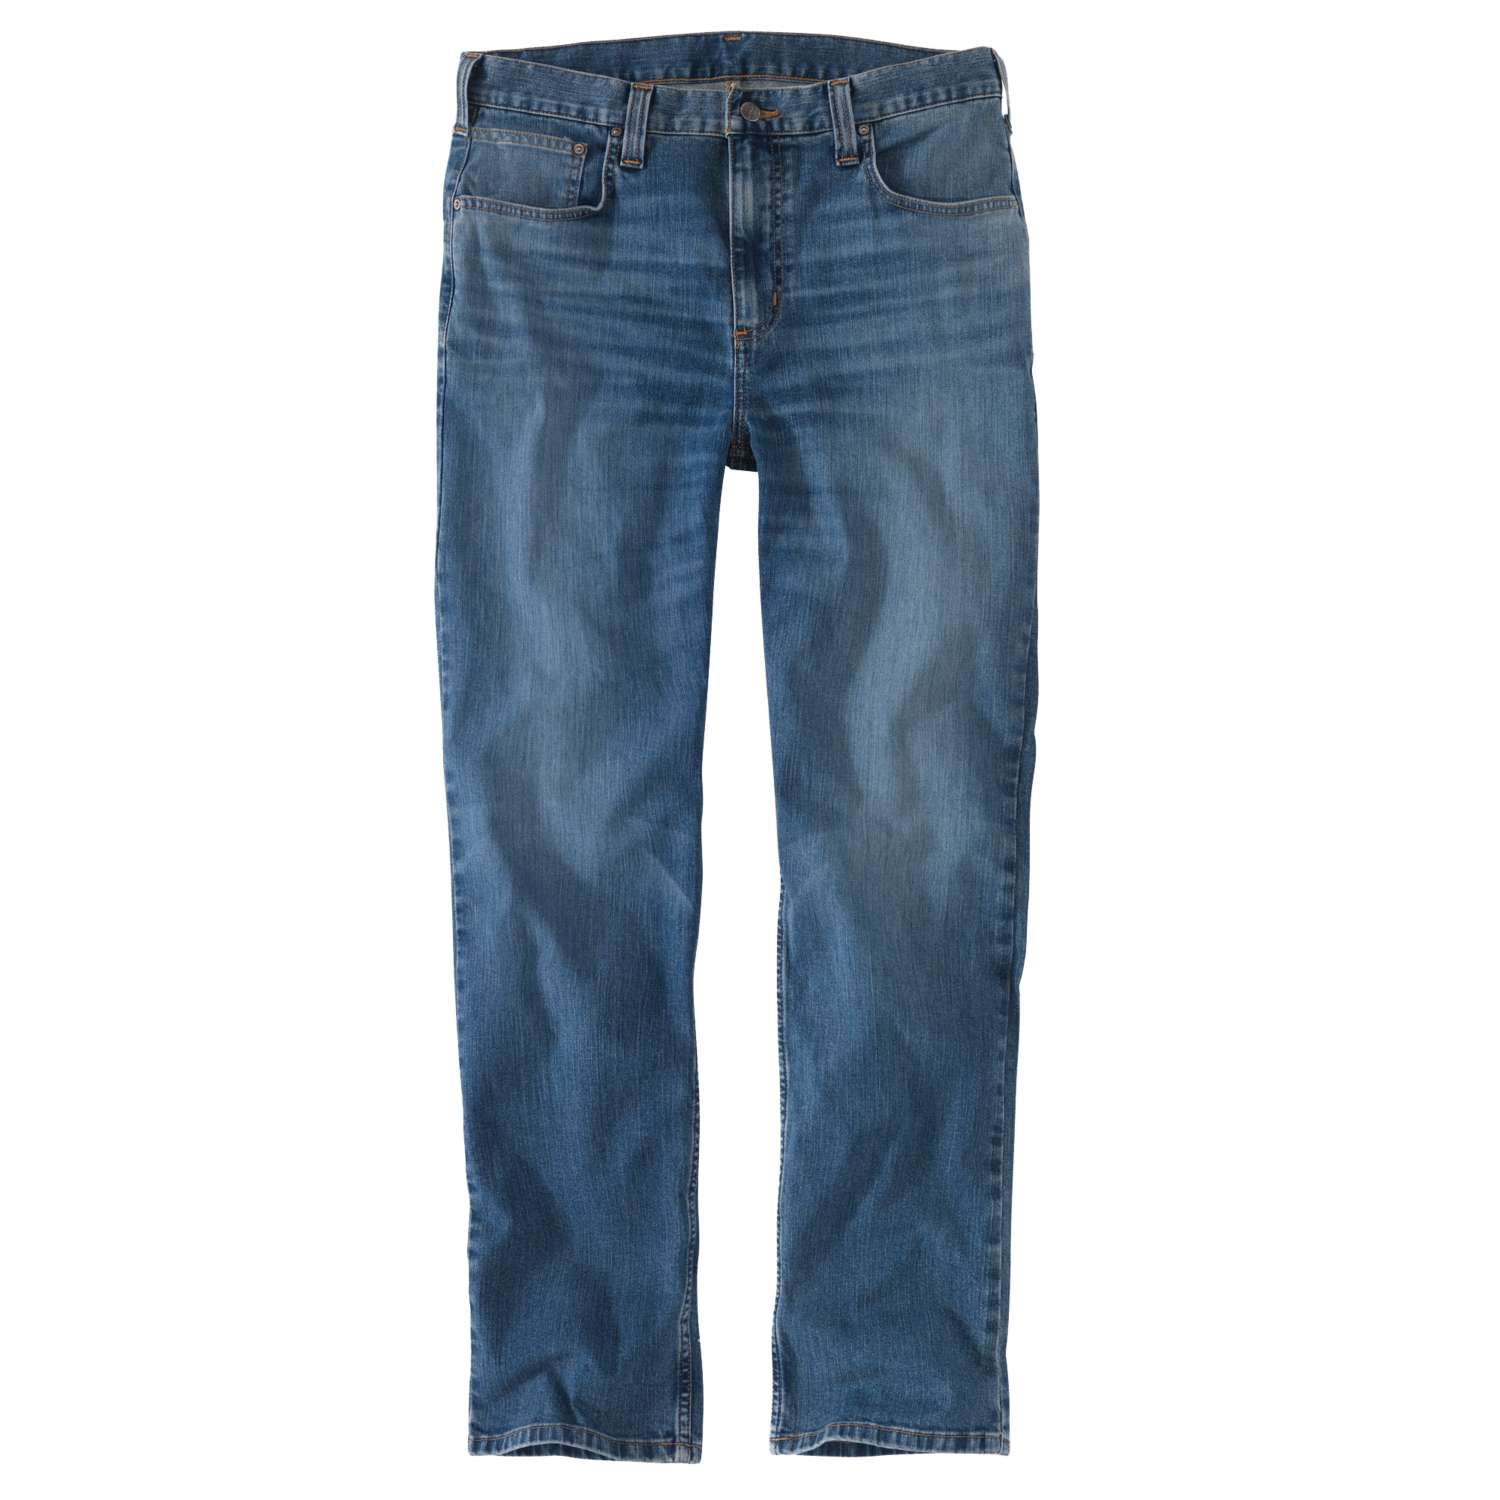 5-Taschen-Jeans, Stretch-Stoff, mittlere Bund